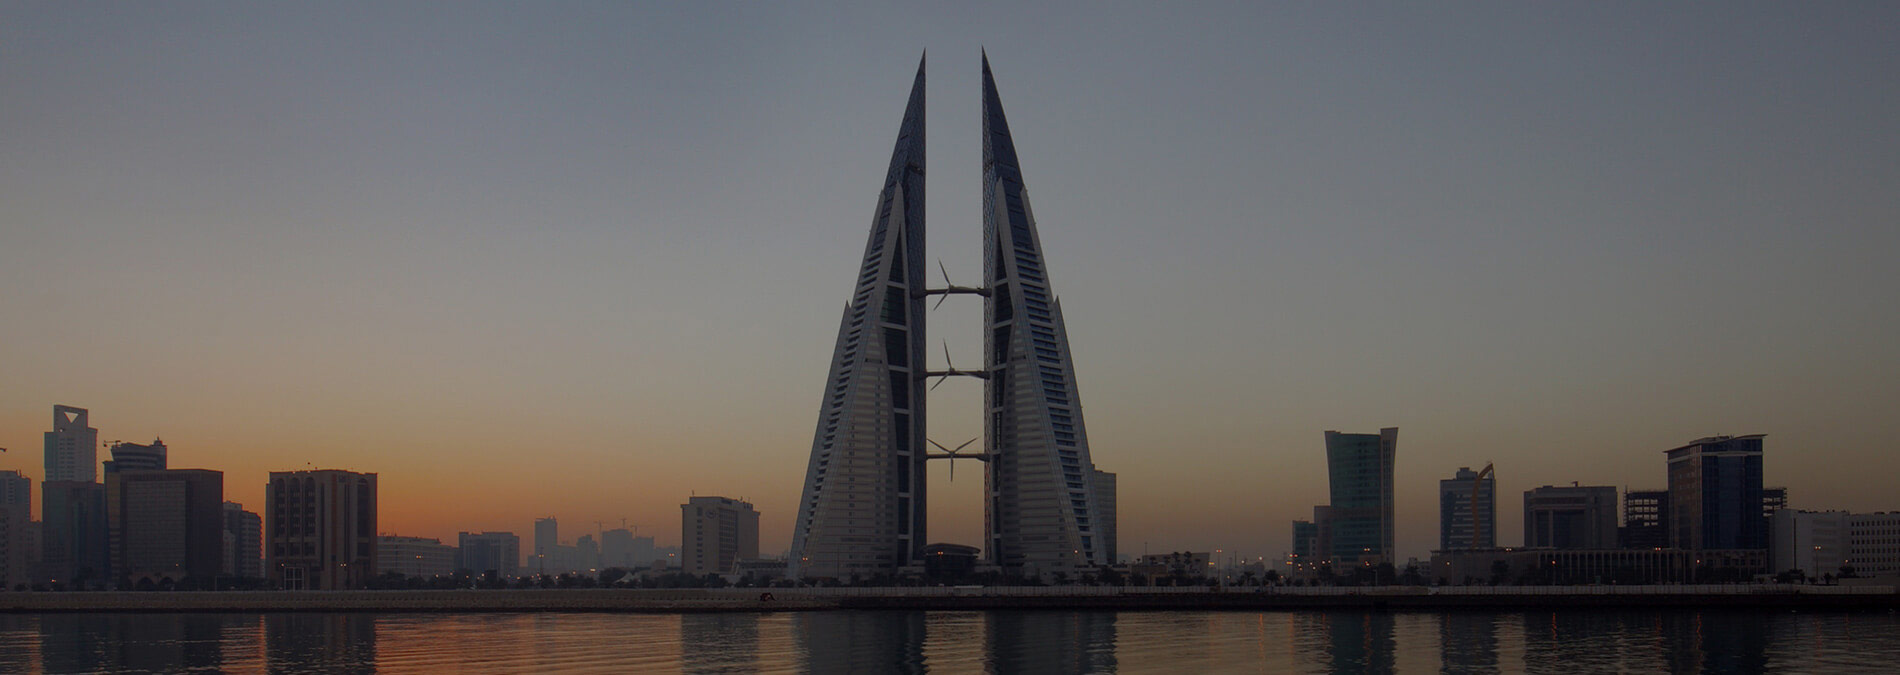 bahrain-wtc-dusk-1900x675